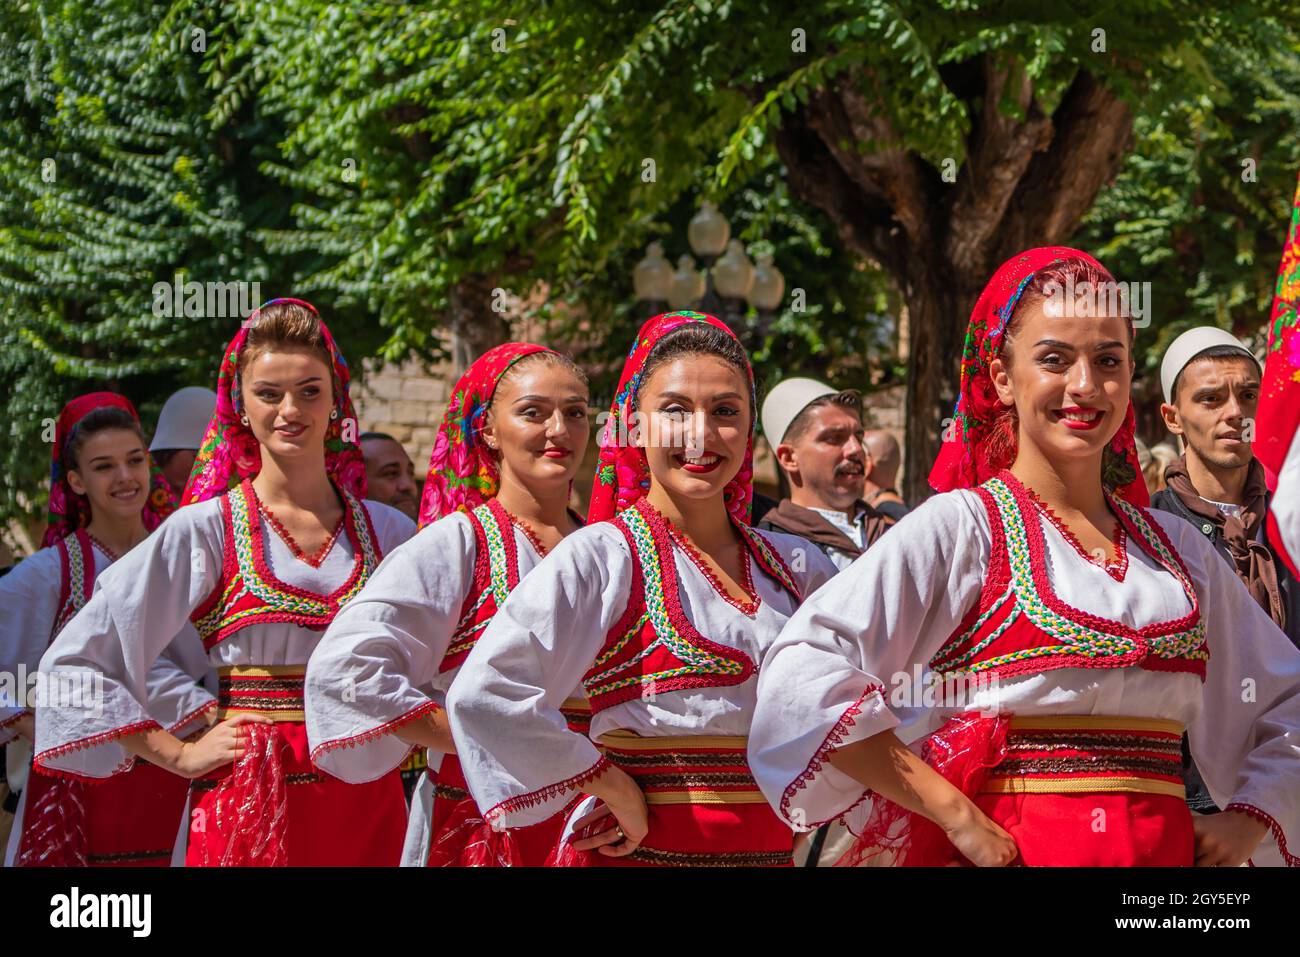 Danza popolare dalla Macedonia in un festival folk di strada a Montblanc, Festival Mayor Foto Stock